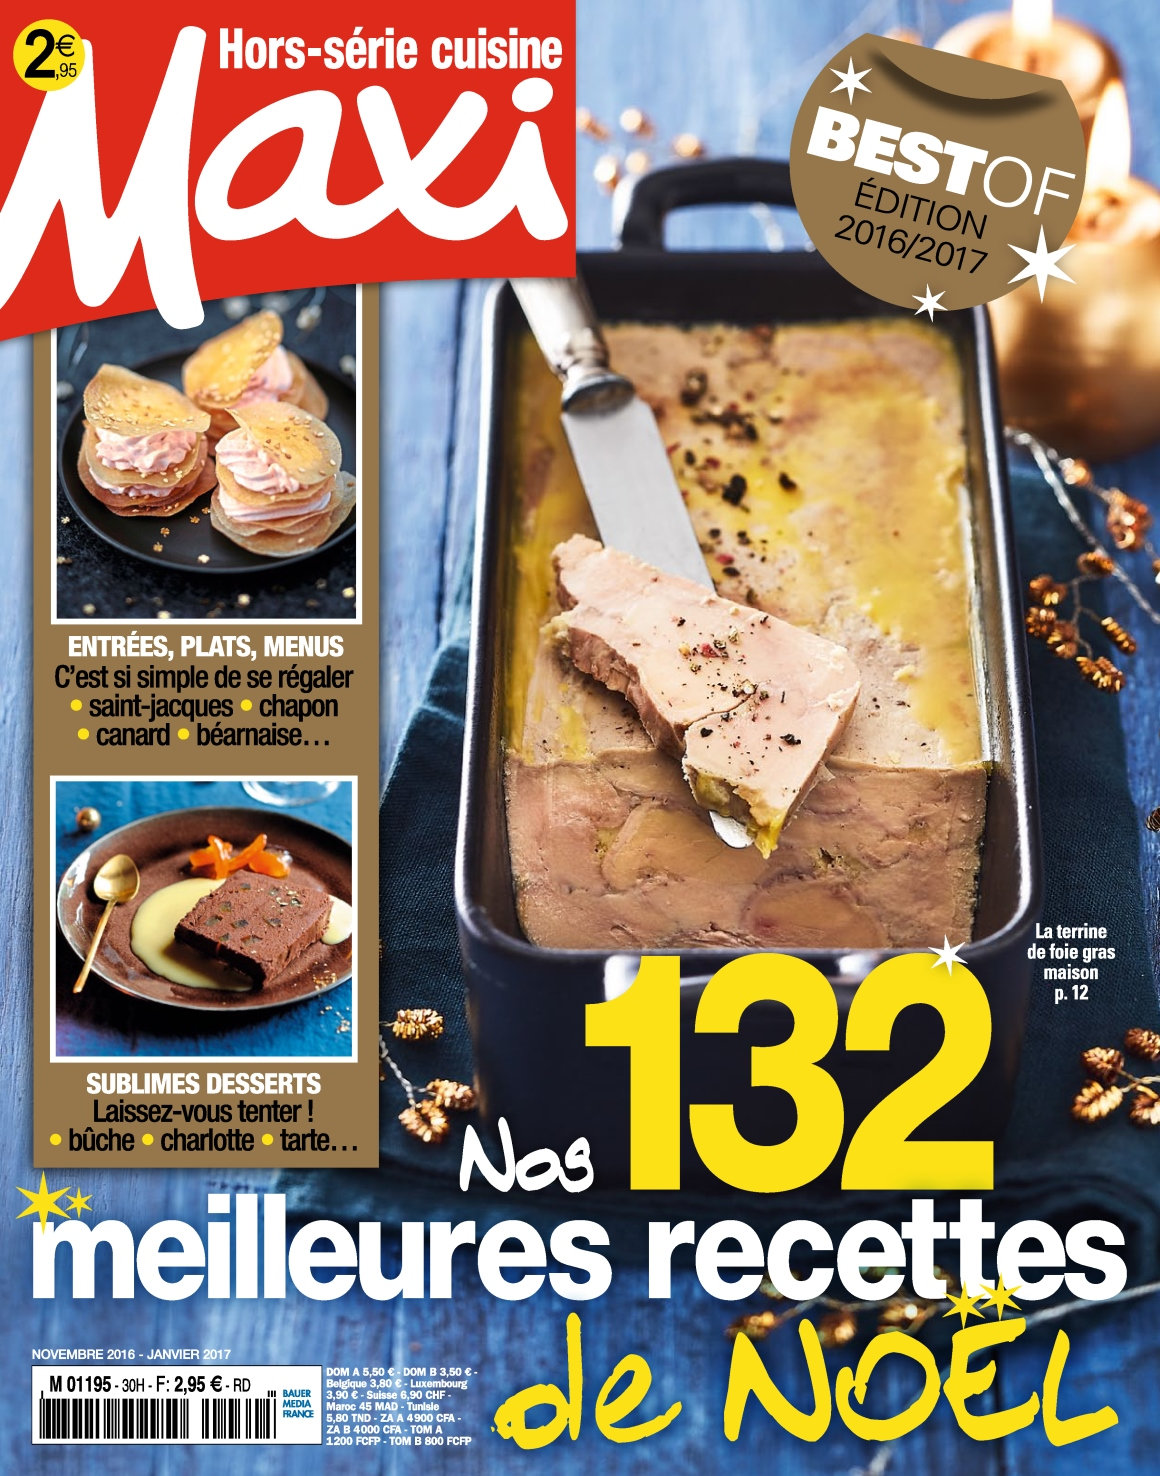 Maxi Hors Série Cuisine N°32 - Décembre 2016/Janvier 2017 